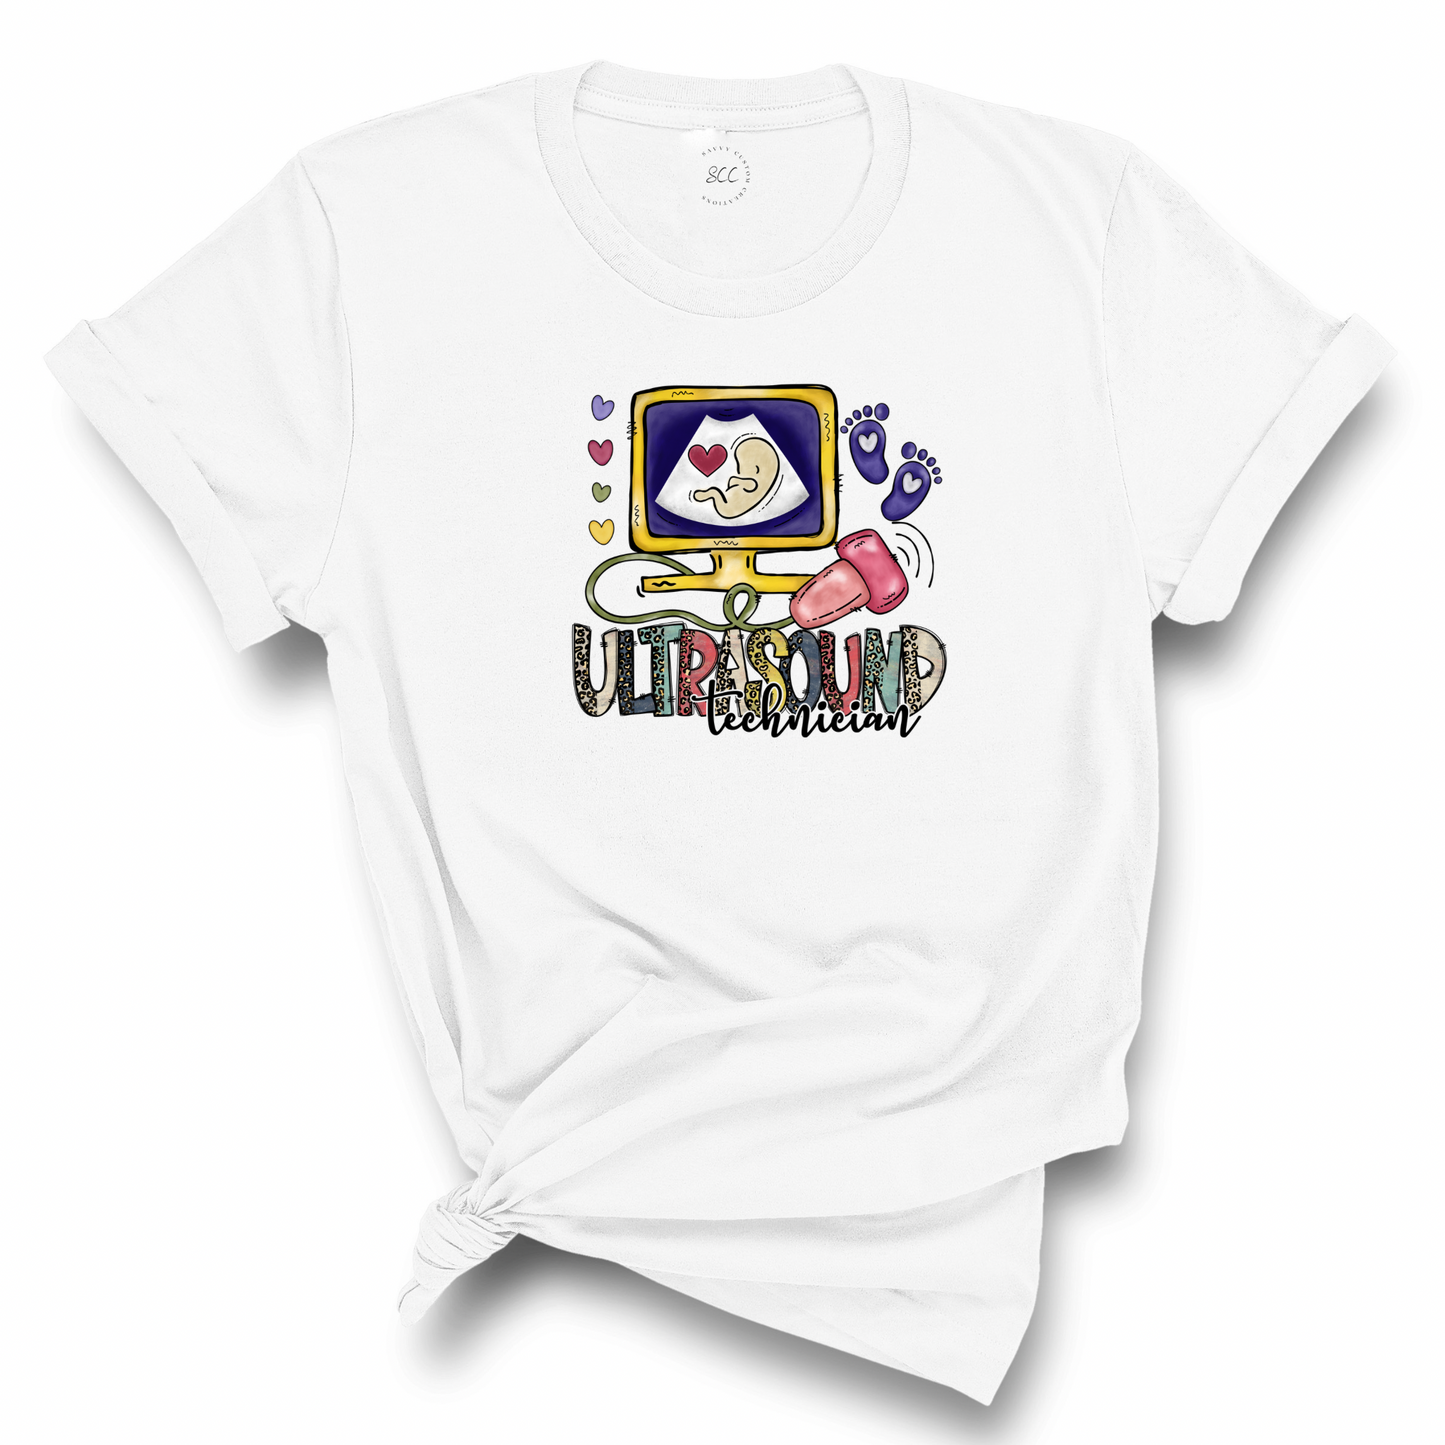 ULTRASOUND TECHNICIAN - Unisex T-Shirt